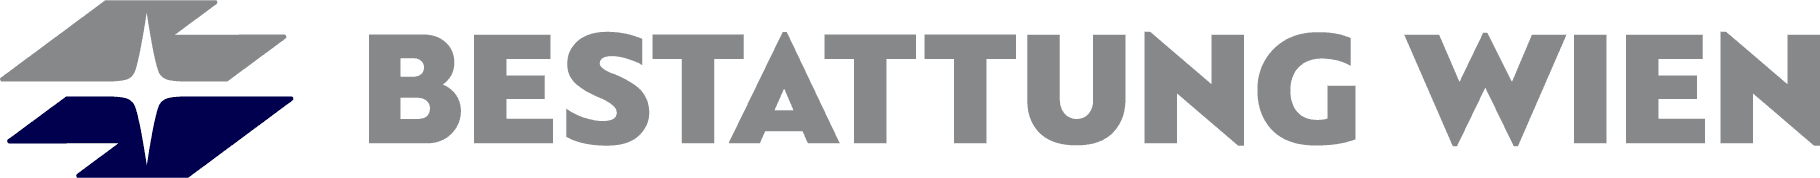 Logo BESTATTUNG WIEN - Kundenservice Penzing